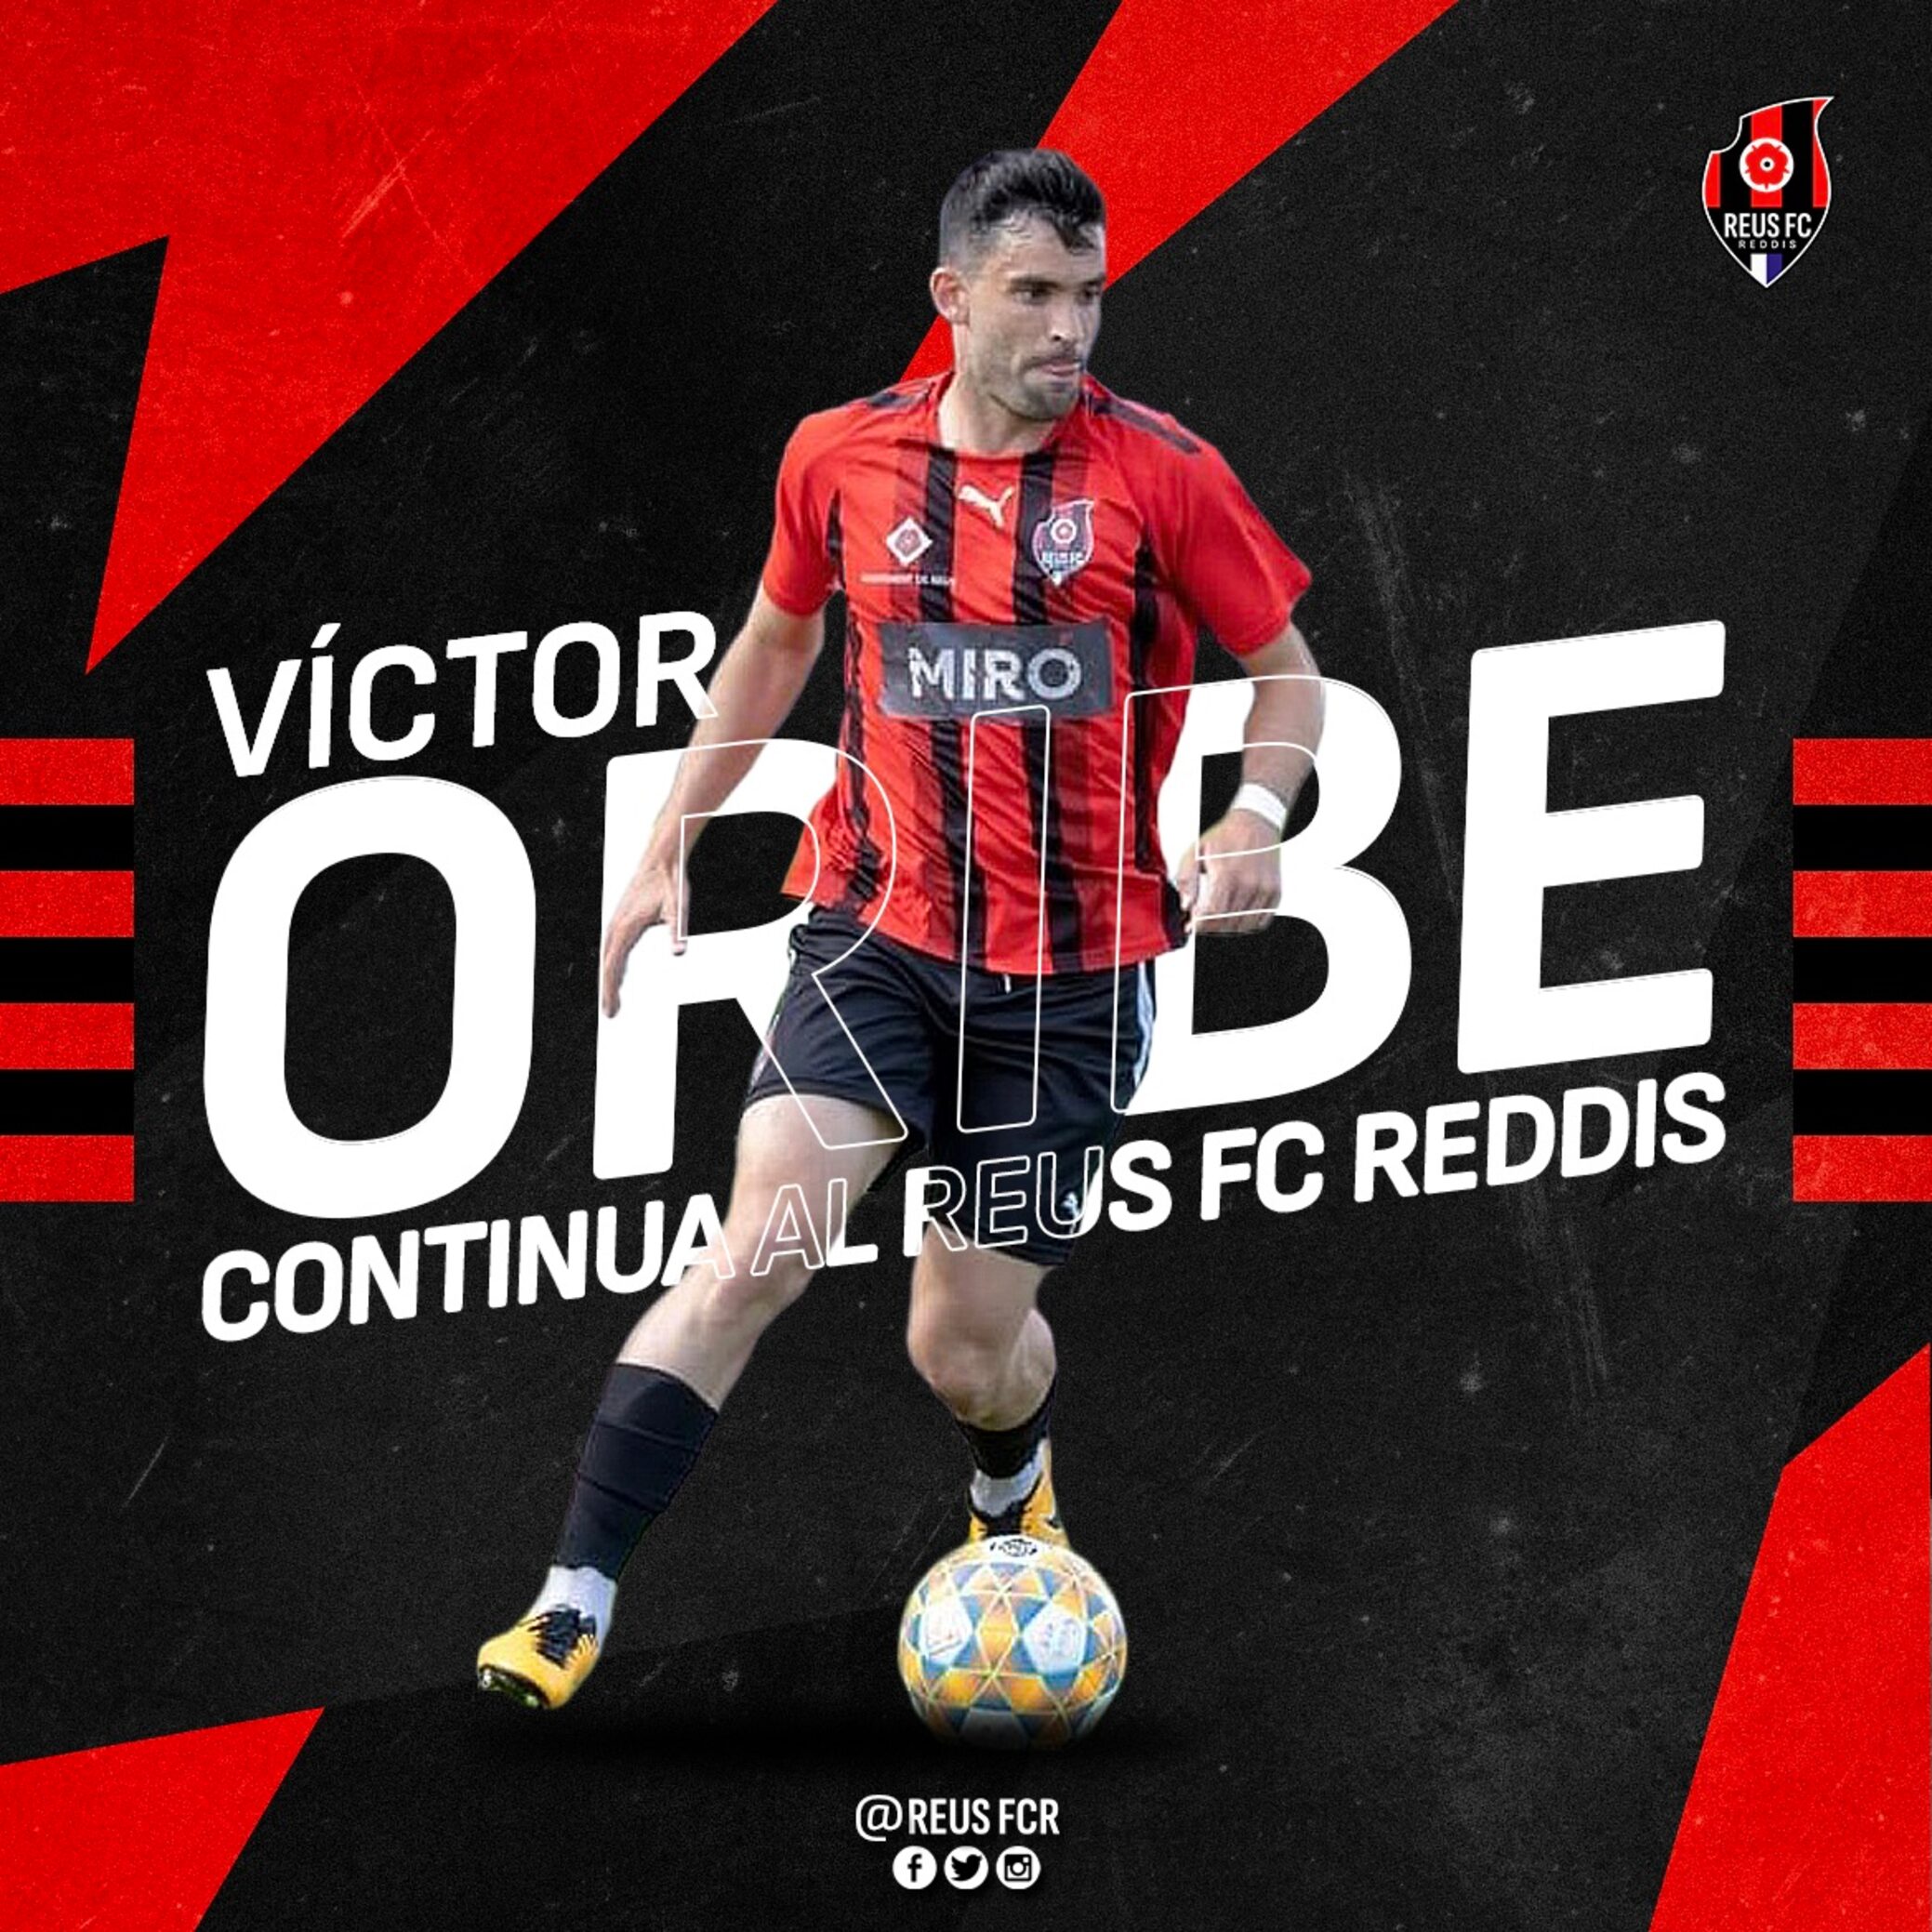 Víctor Oribe renova amb el Reus FC Reddis